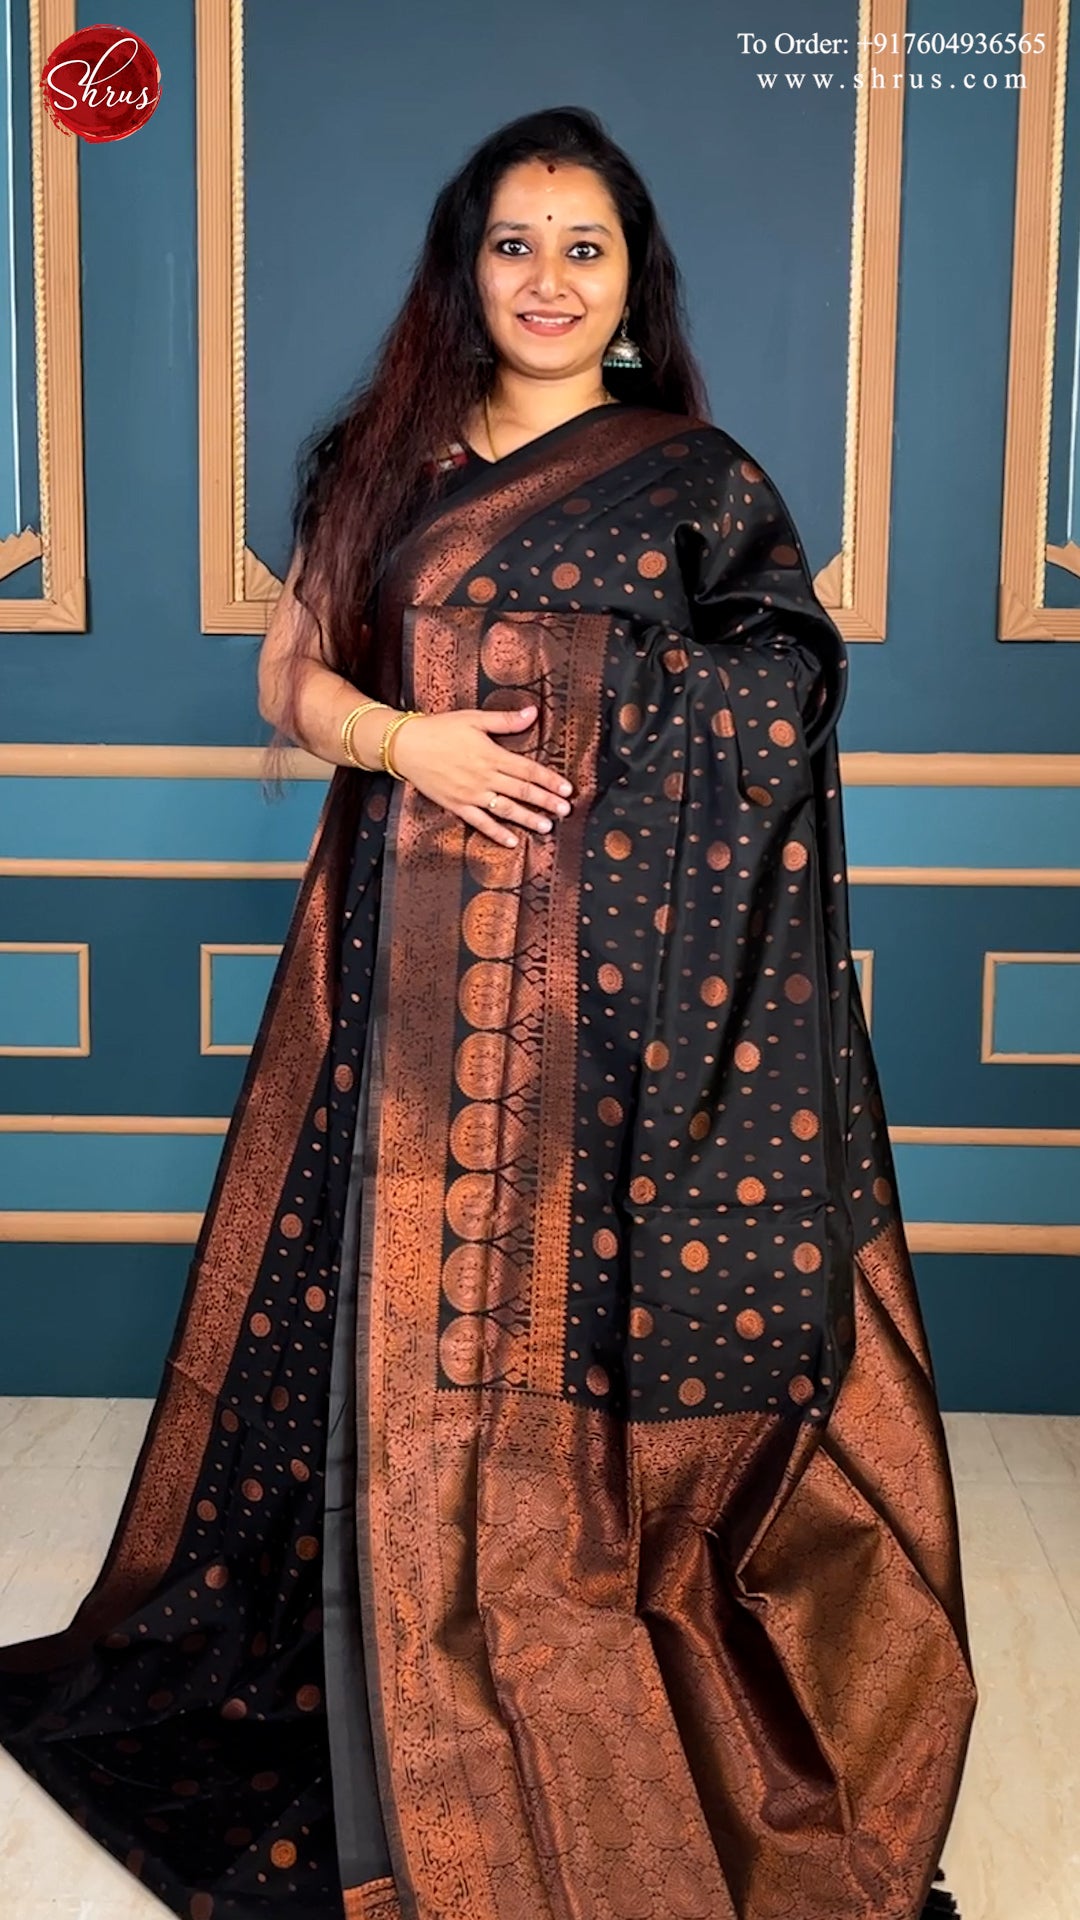 Black(Single Tone)- Semi Soft Silk with copper zari woven floral buttas on the body & Zari Border - Shop on ShrusEternity.com